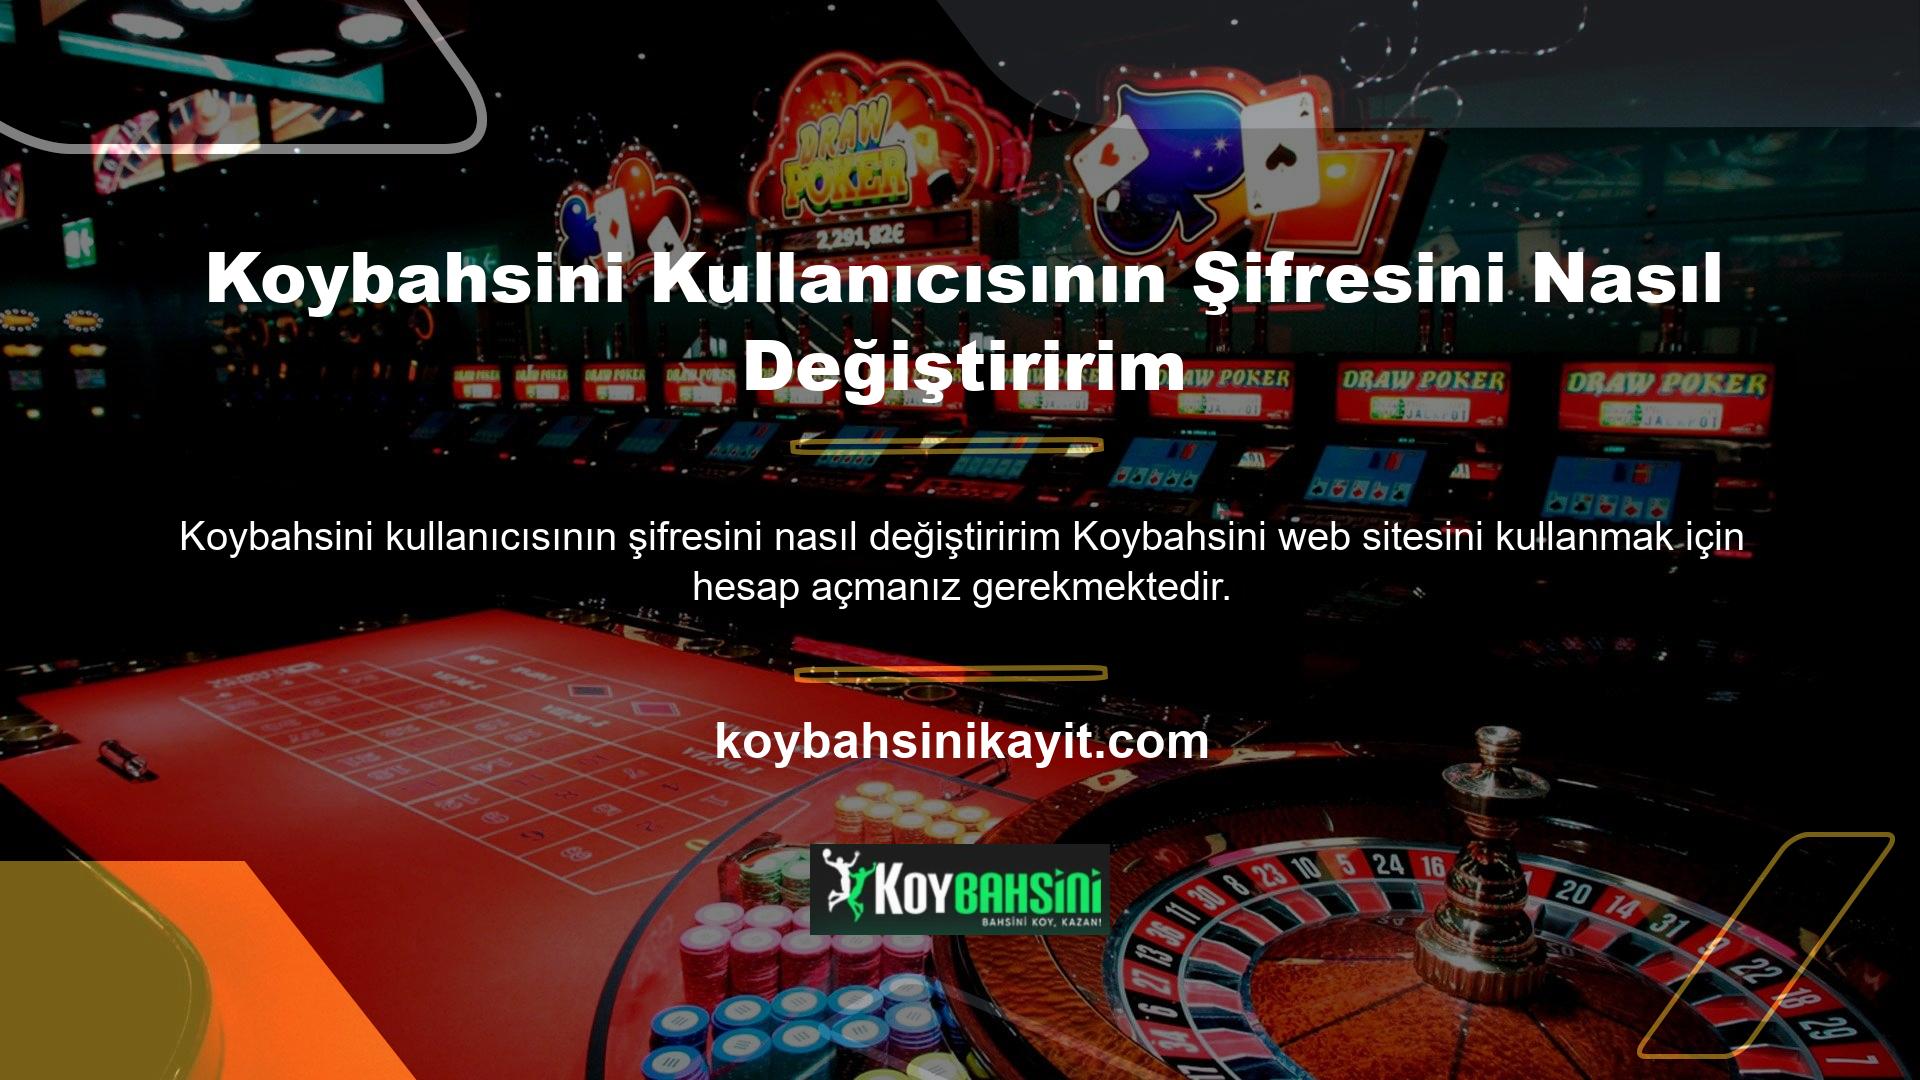 Koybahsini sitesinde para kazanmak için üye olmanız ve hesabınızı işlem yapmak için kullanmanız gerekir